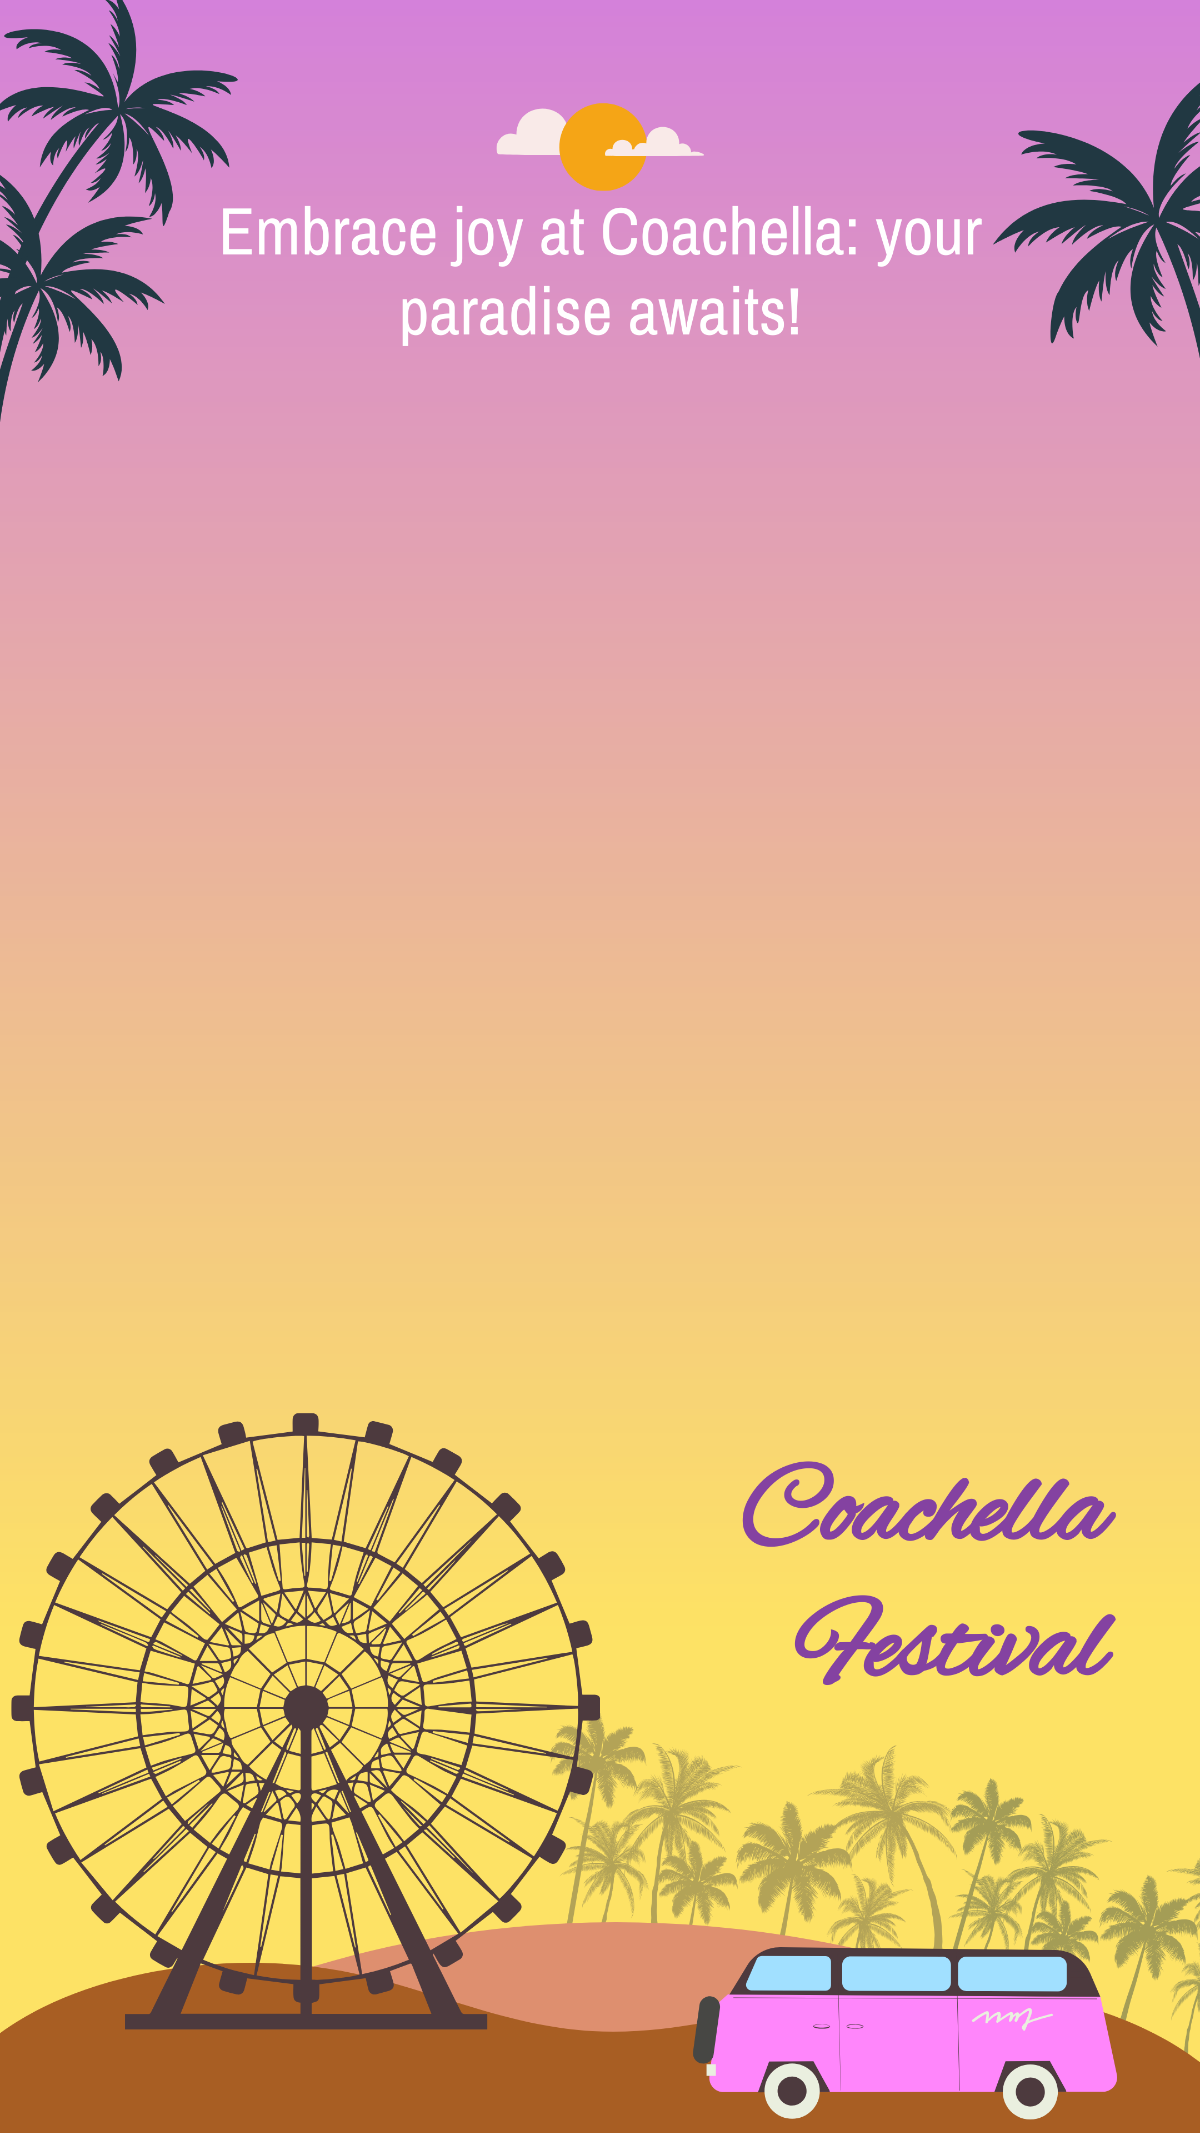 Coachella Festival Snapchat Geofilter Template